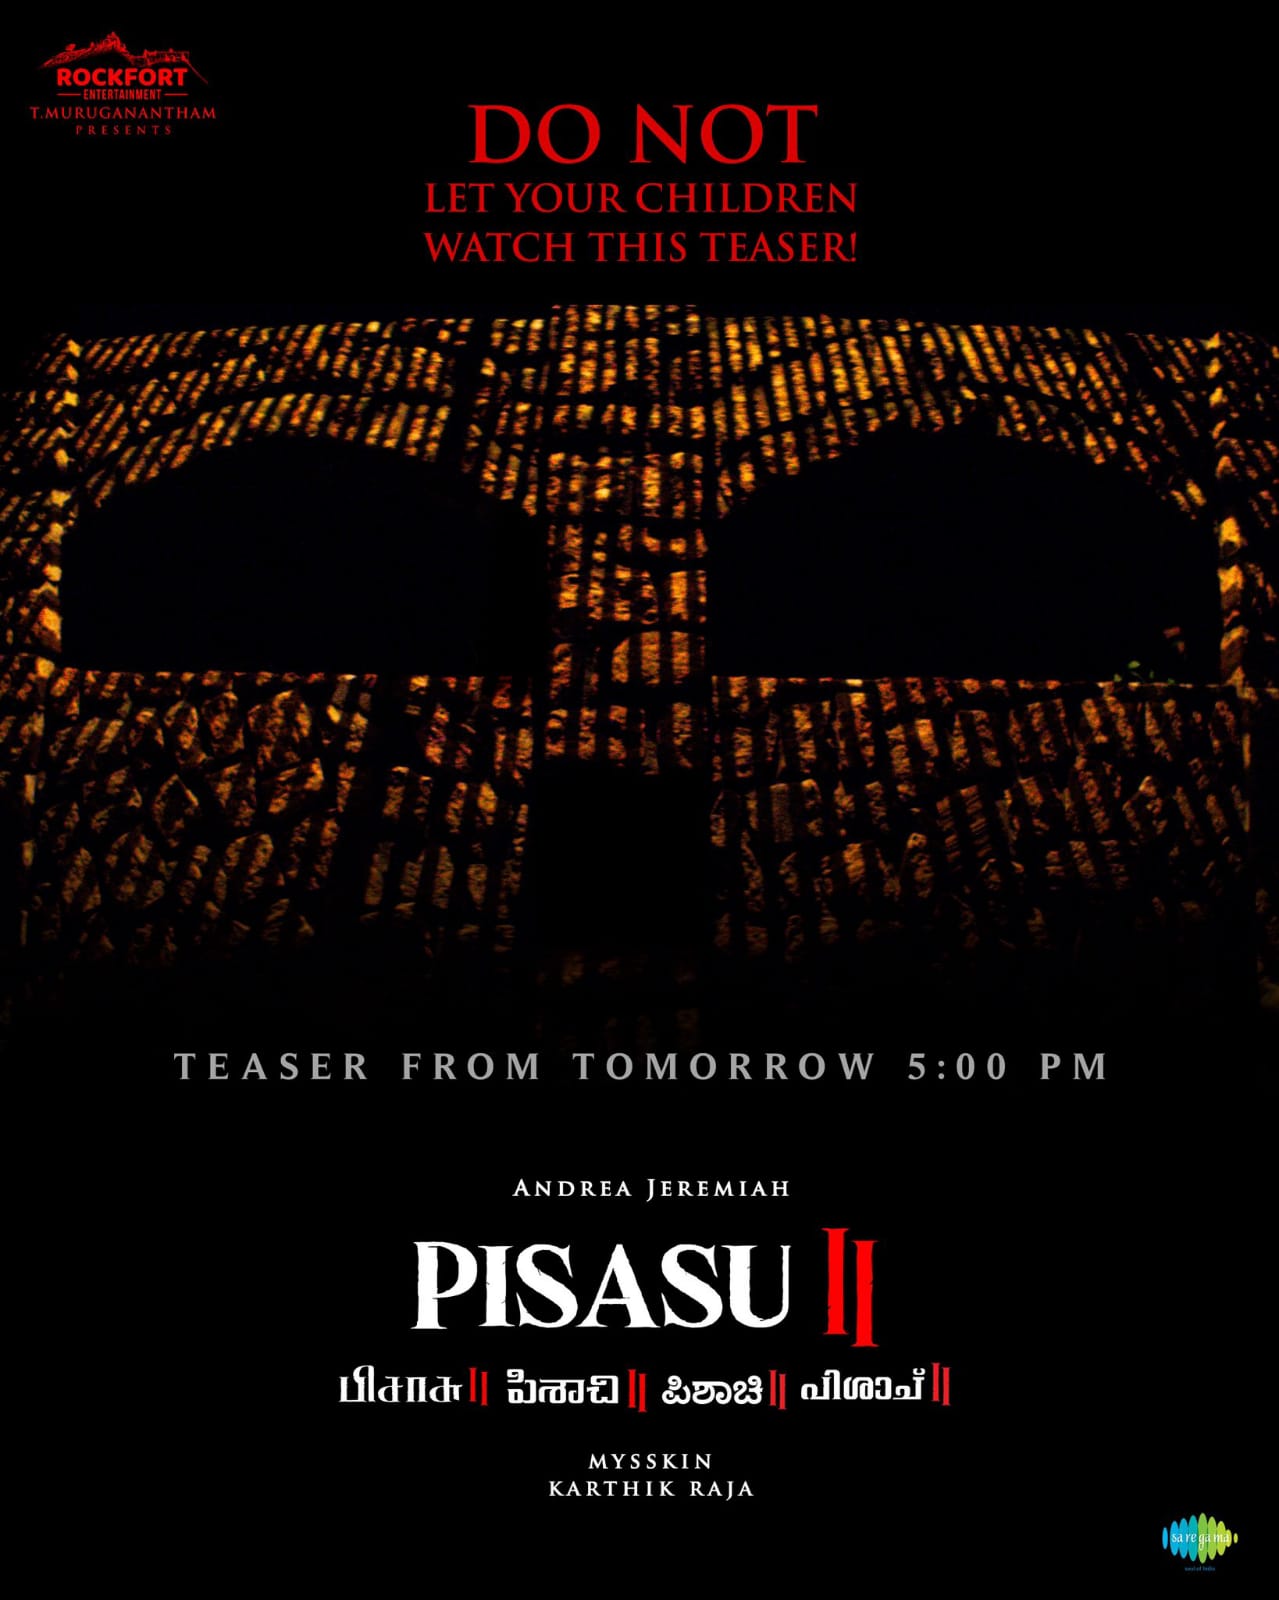 Pisasu 2 teaser video has been released